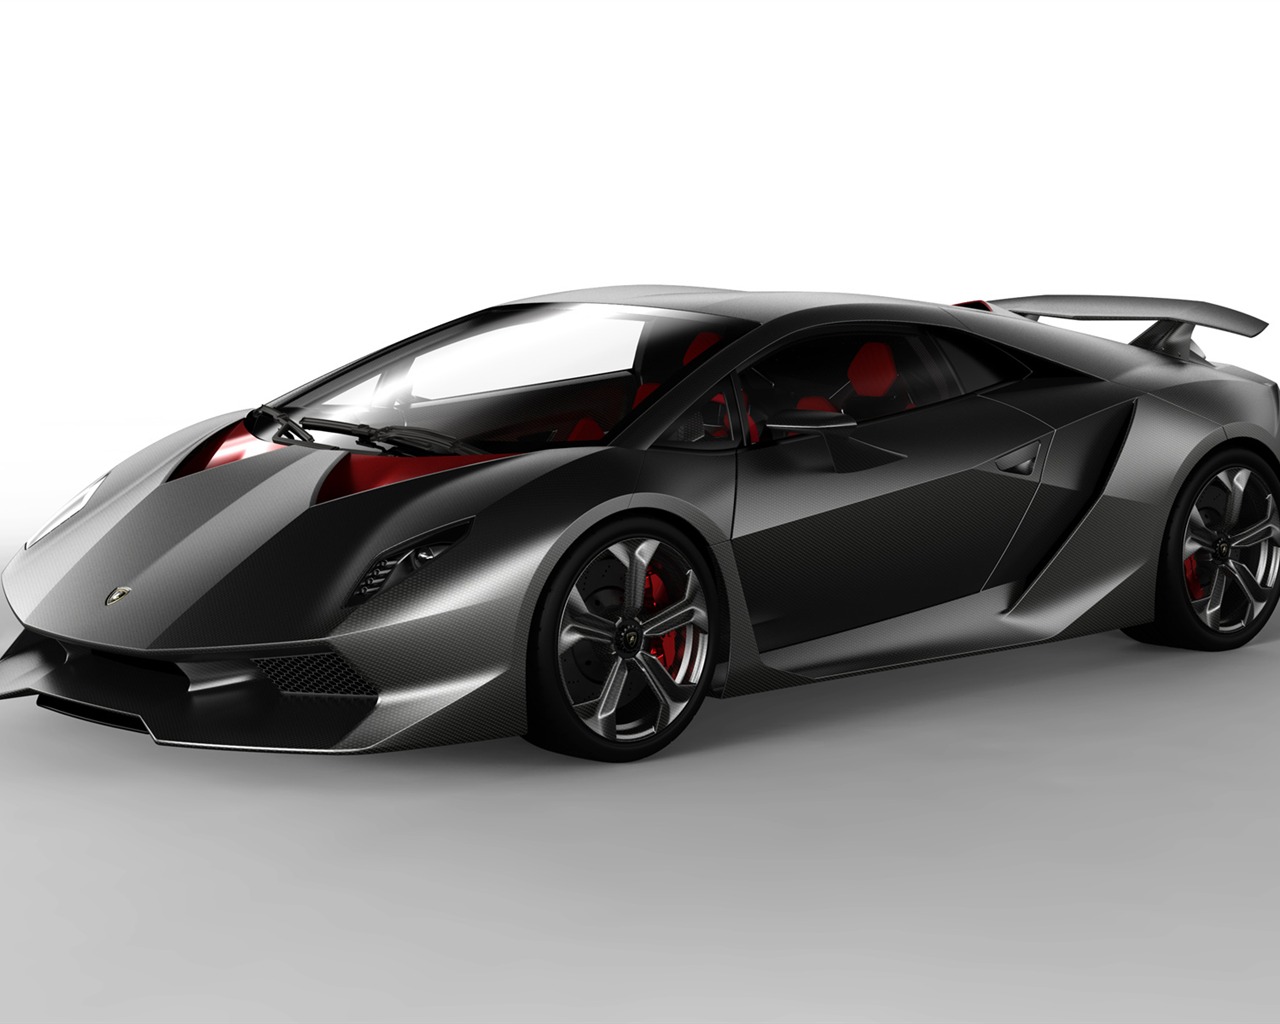 Lamborghini Concept Car Sesto Elemento - 2010 HD Wallpaper #1 - 1280x1024